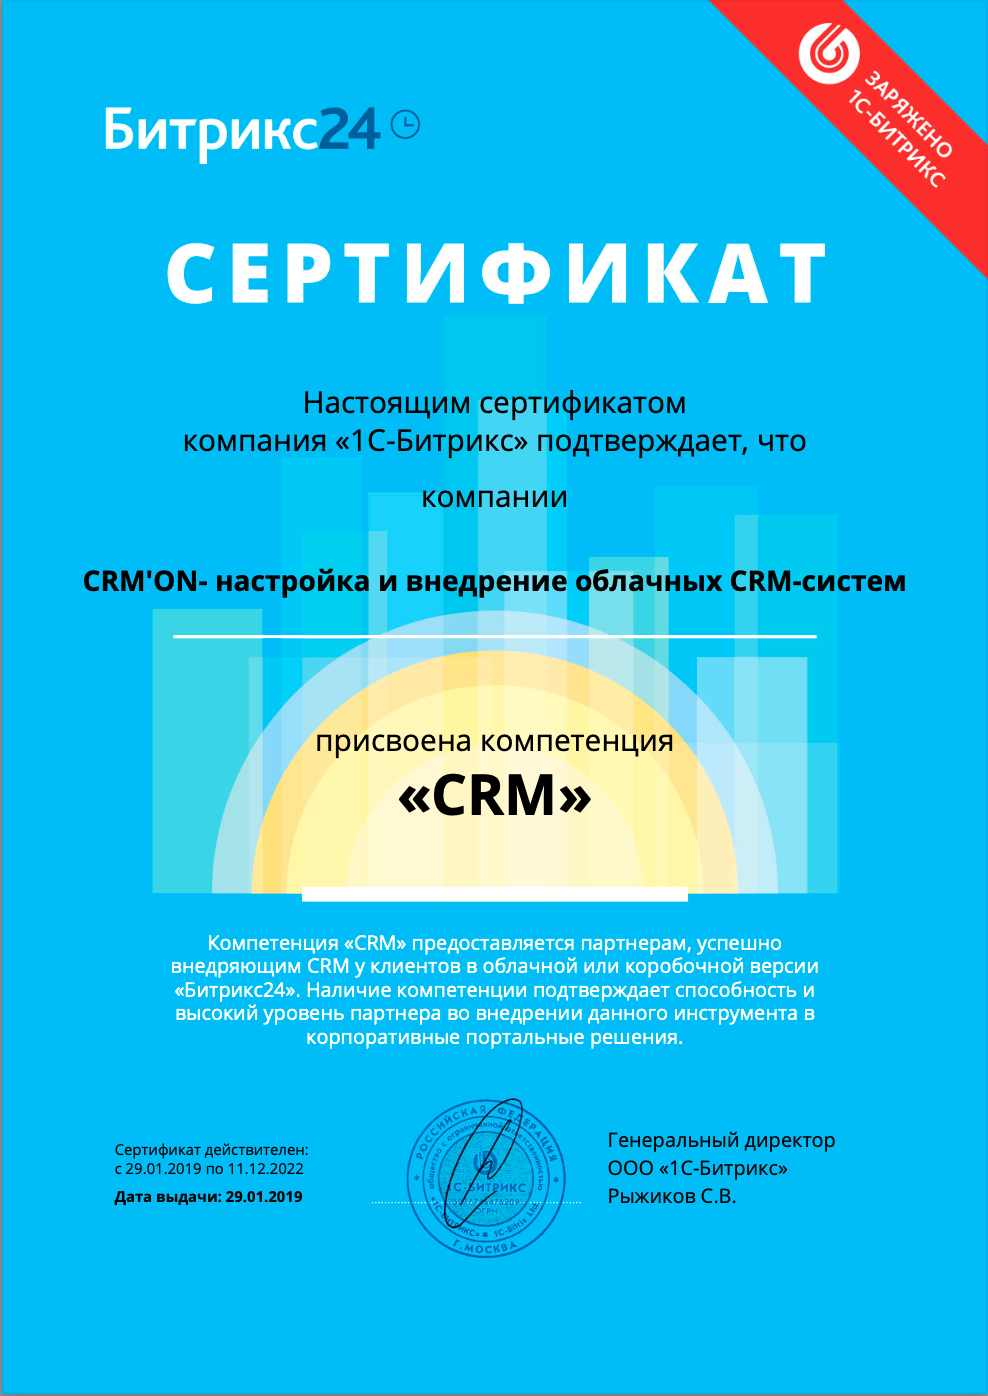 Сертификат партнера Битрикс24 внедрение CRM